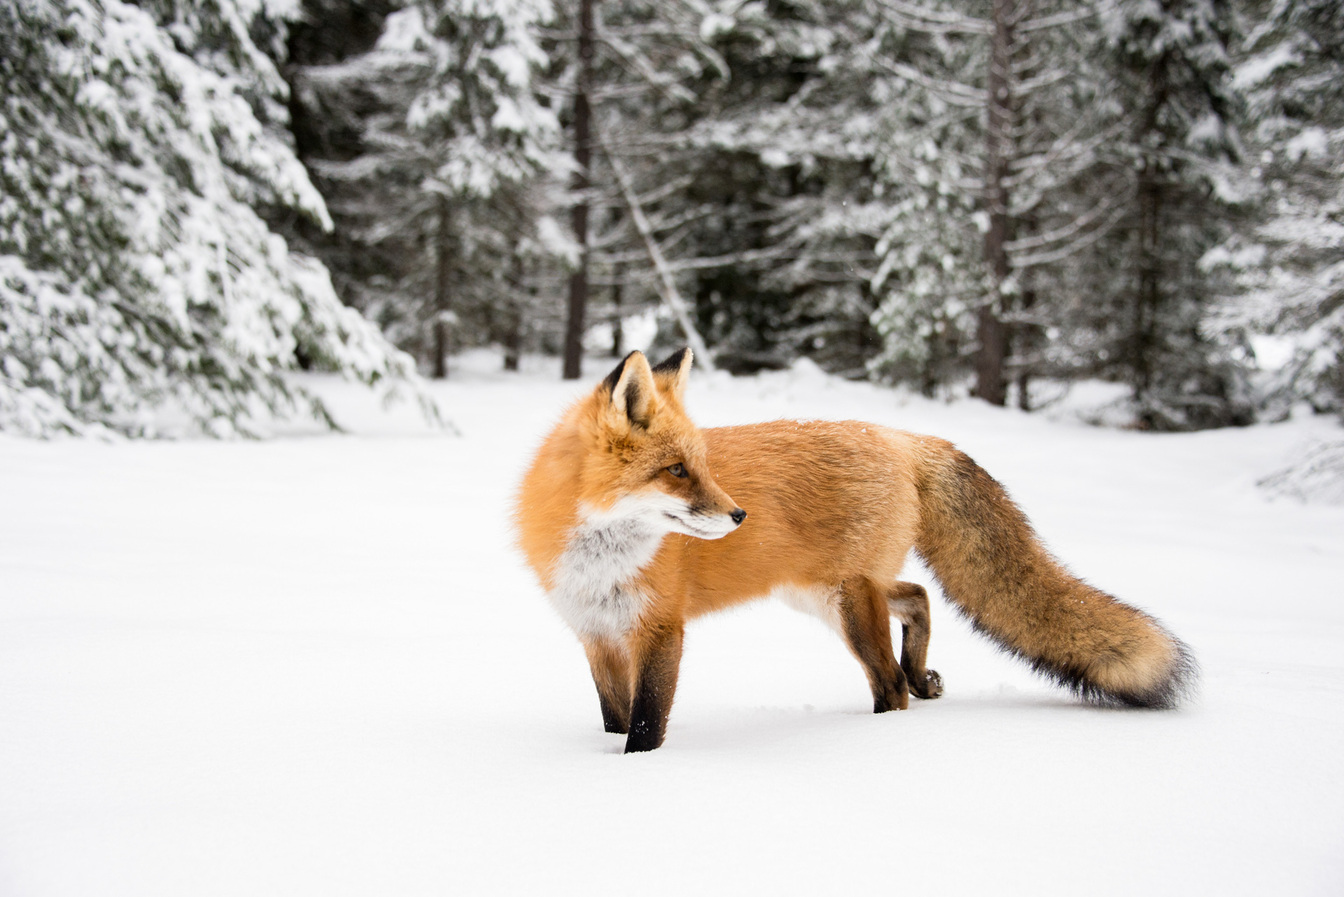 Impronte degli animali sulla neve: come riconoscerle?AttrezzaturaTrekking.it